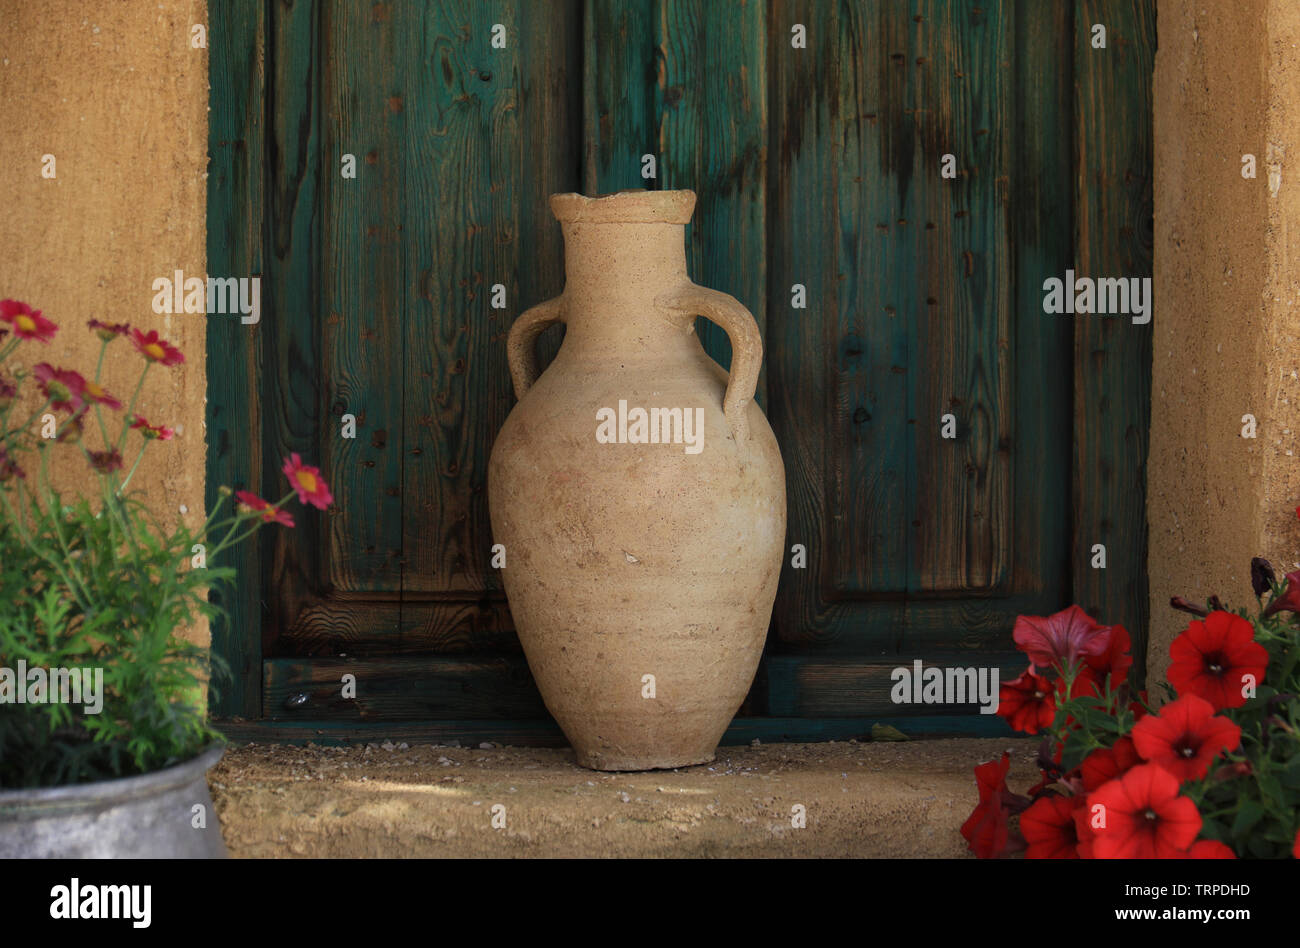 Un pot en terre cuite traditionnelle libanaise dans un jardin en face d'une ancienne fenêtre verte. Banque D'Images